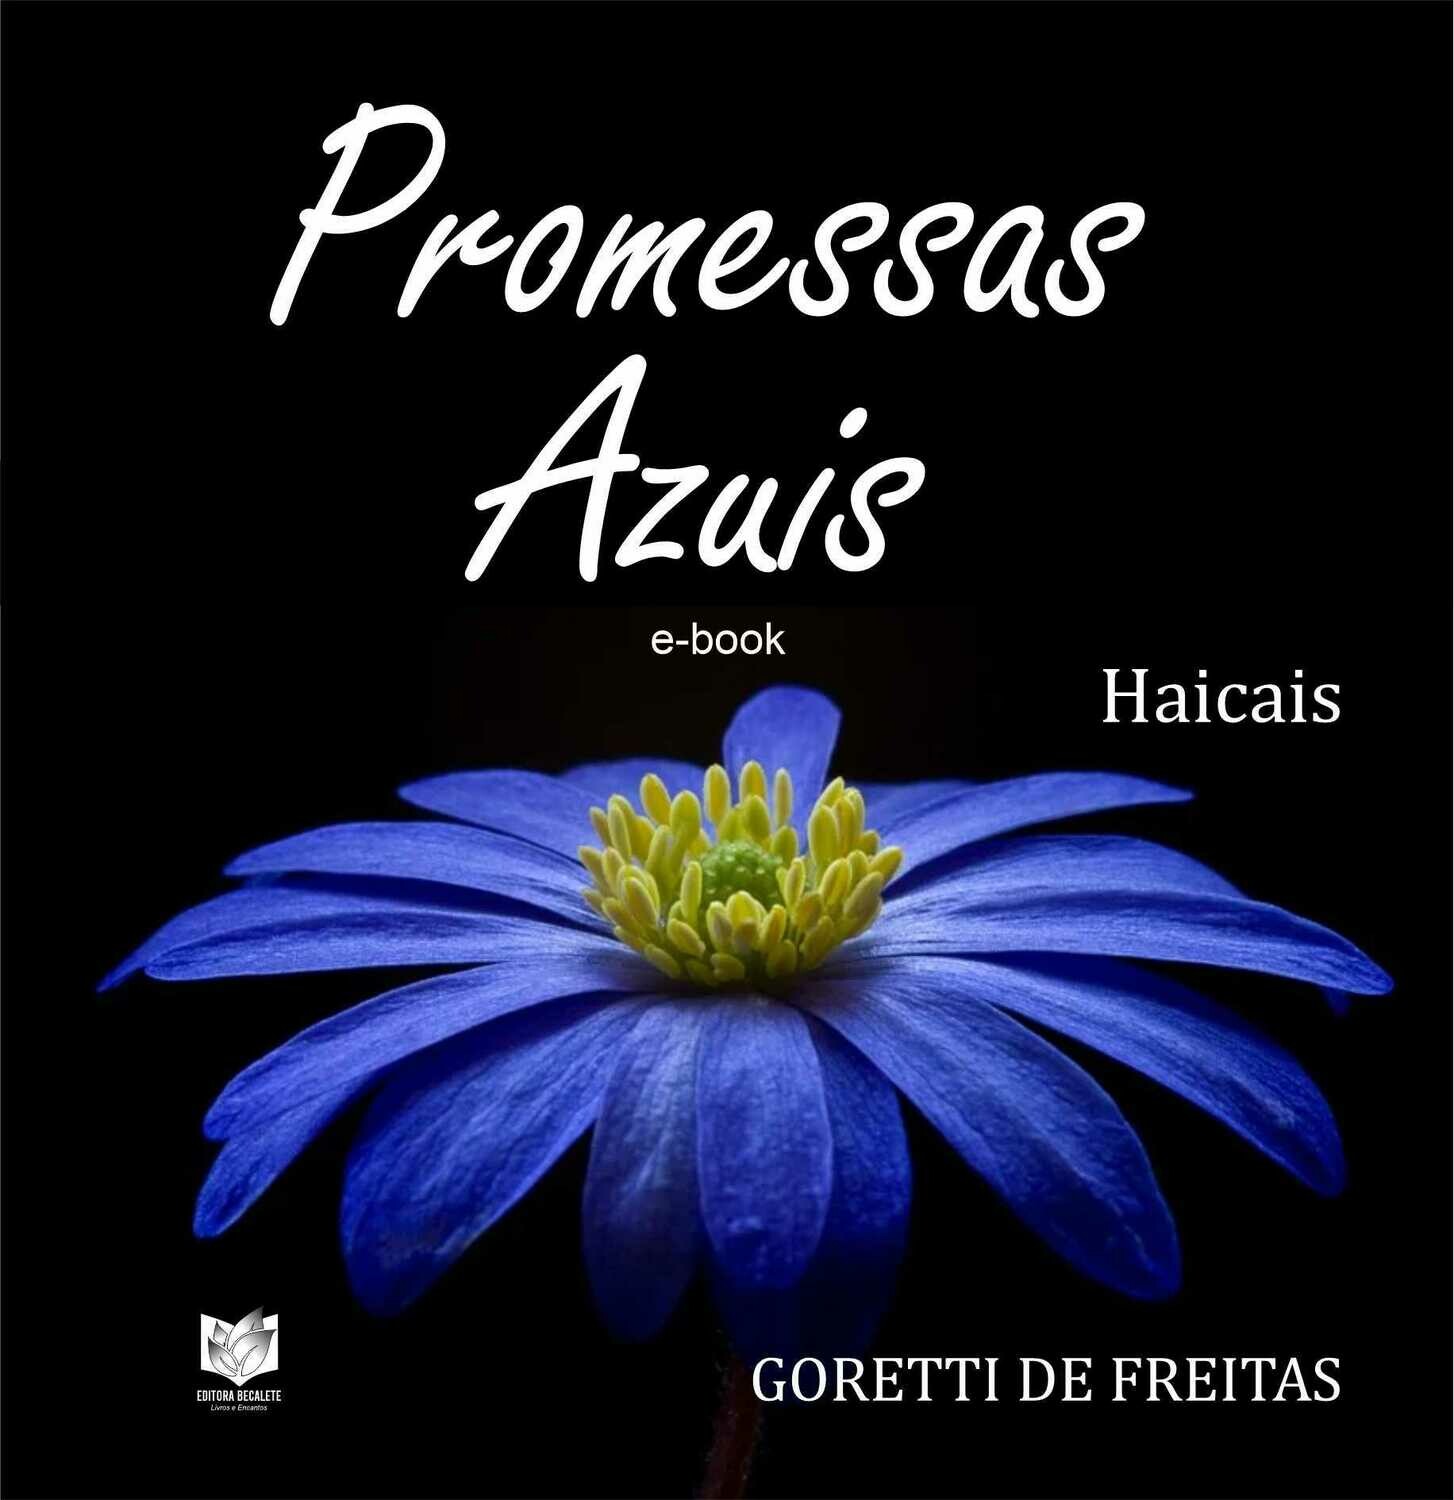 Promessas azuis - Haicais